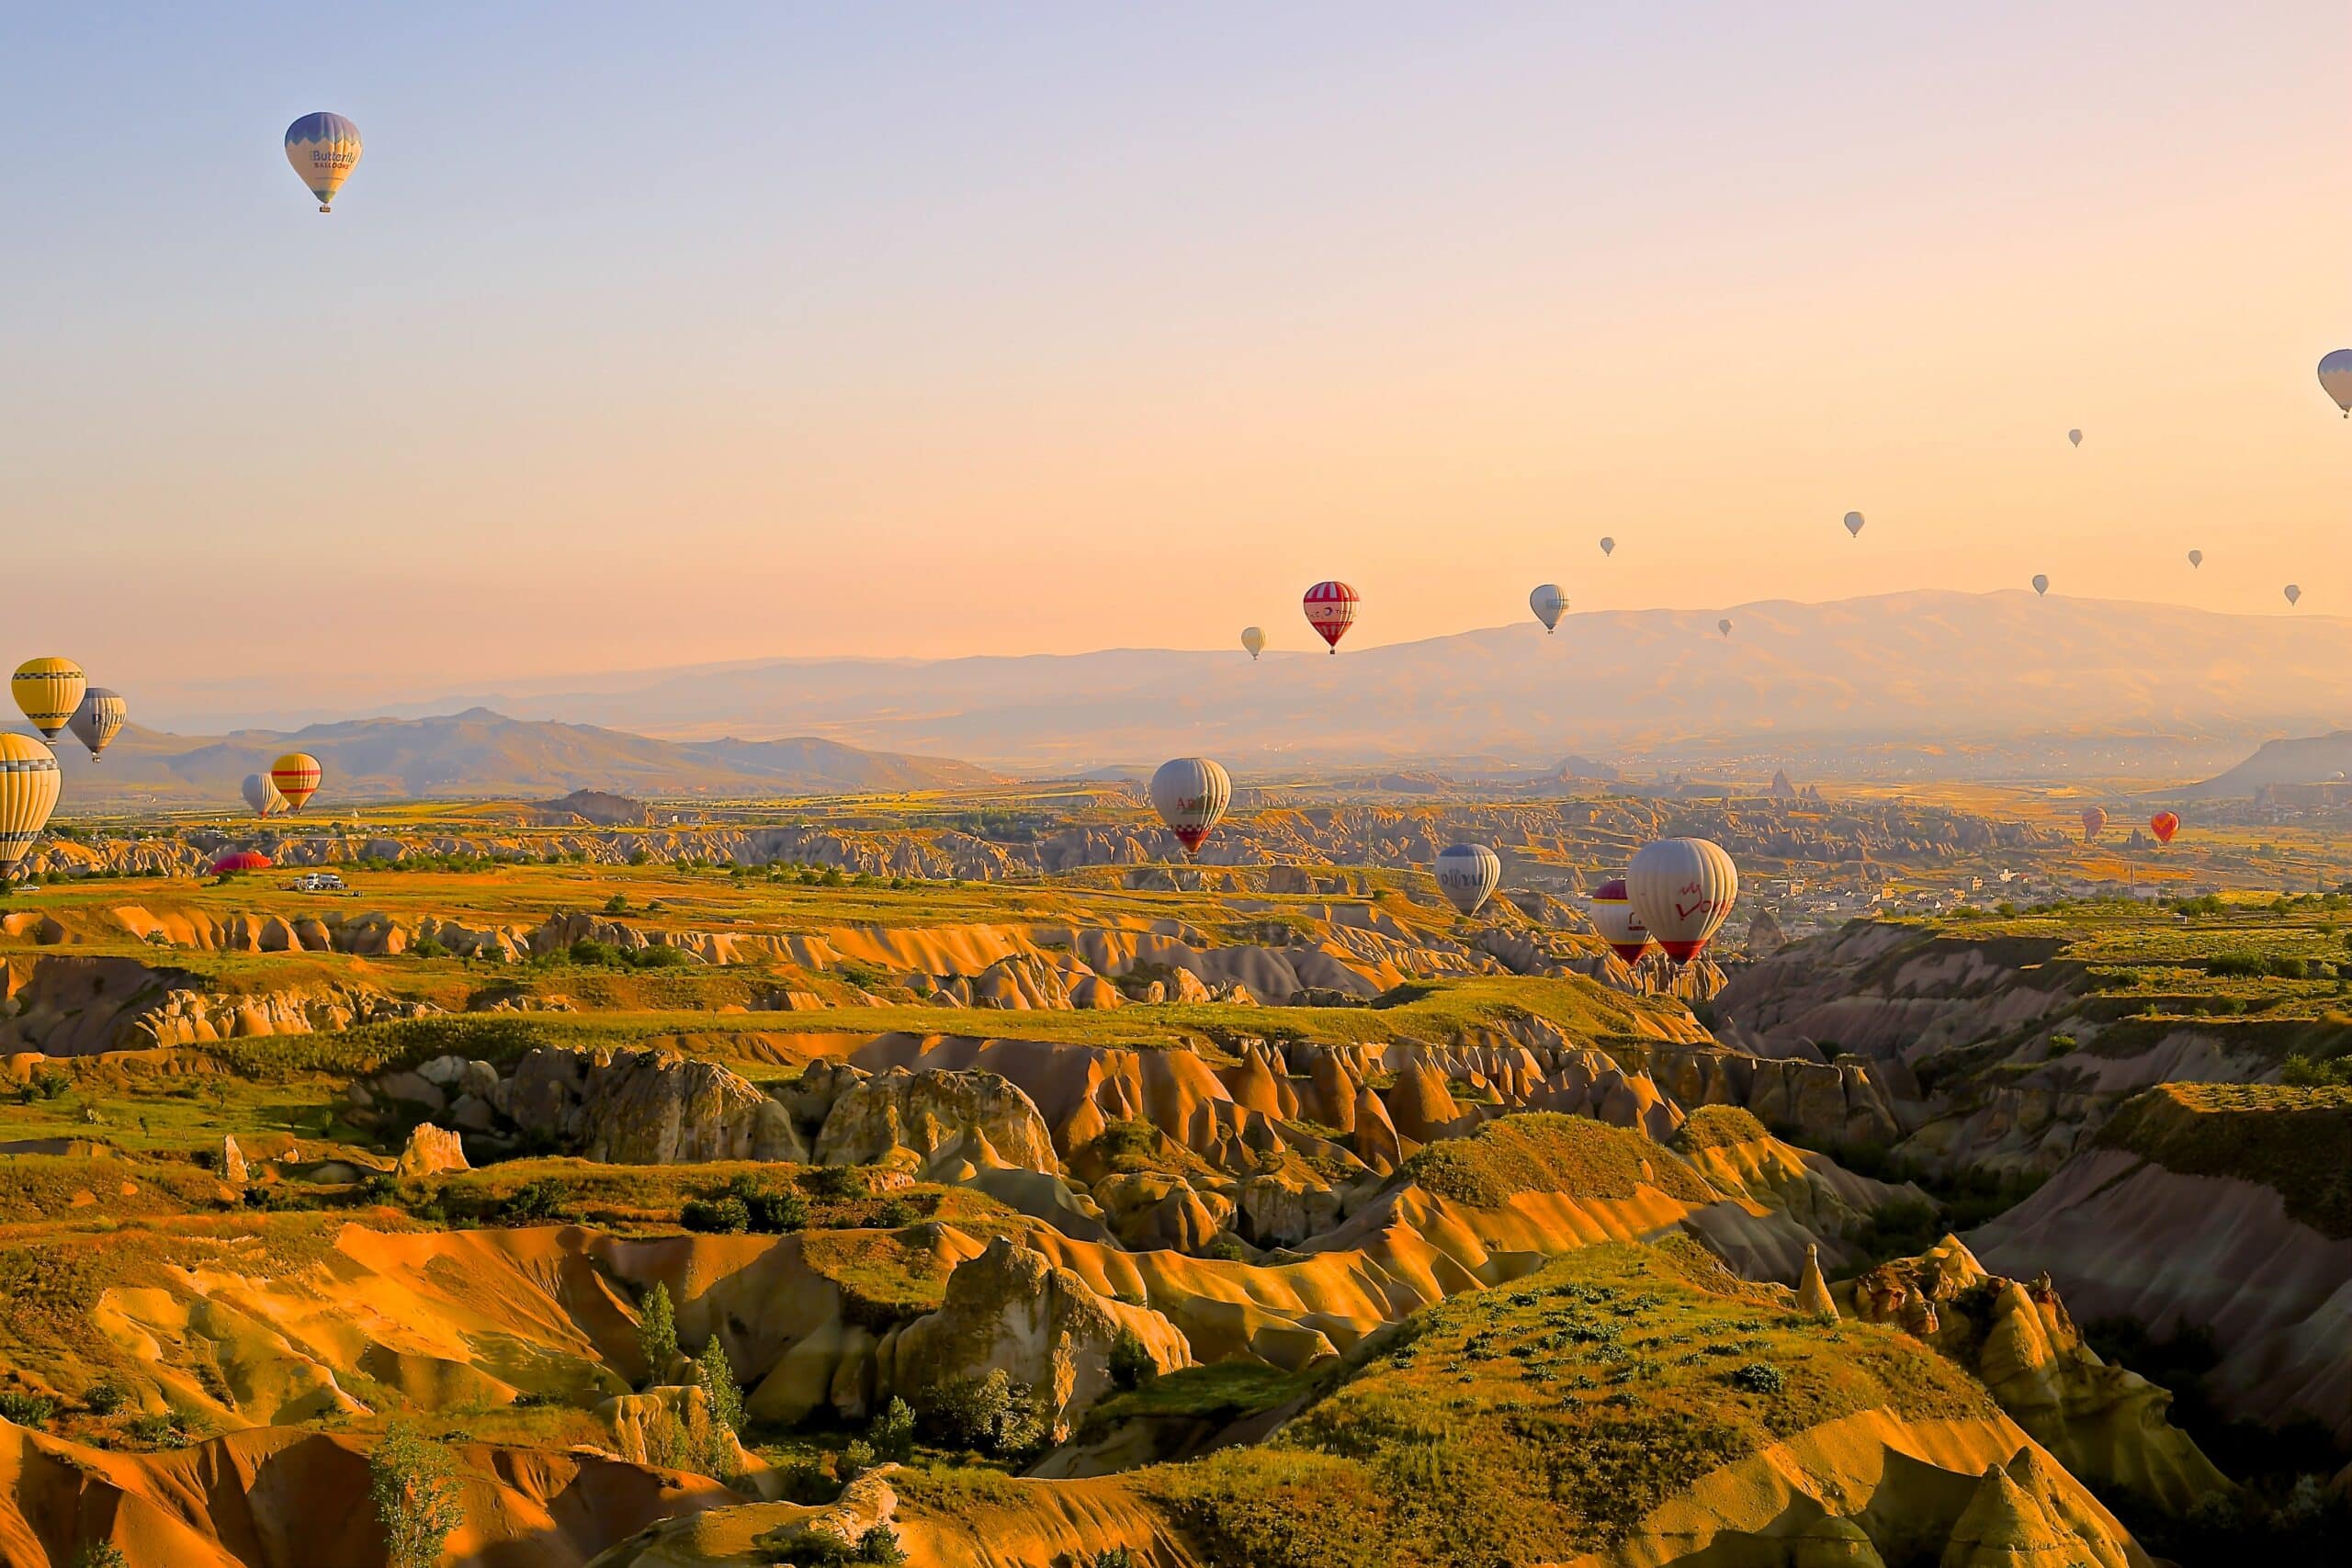 Vista do vale de Capadócia, Turquia, no final do dia com vários balões no céu. Representa chip celular Turquia.